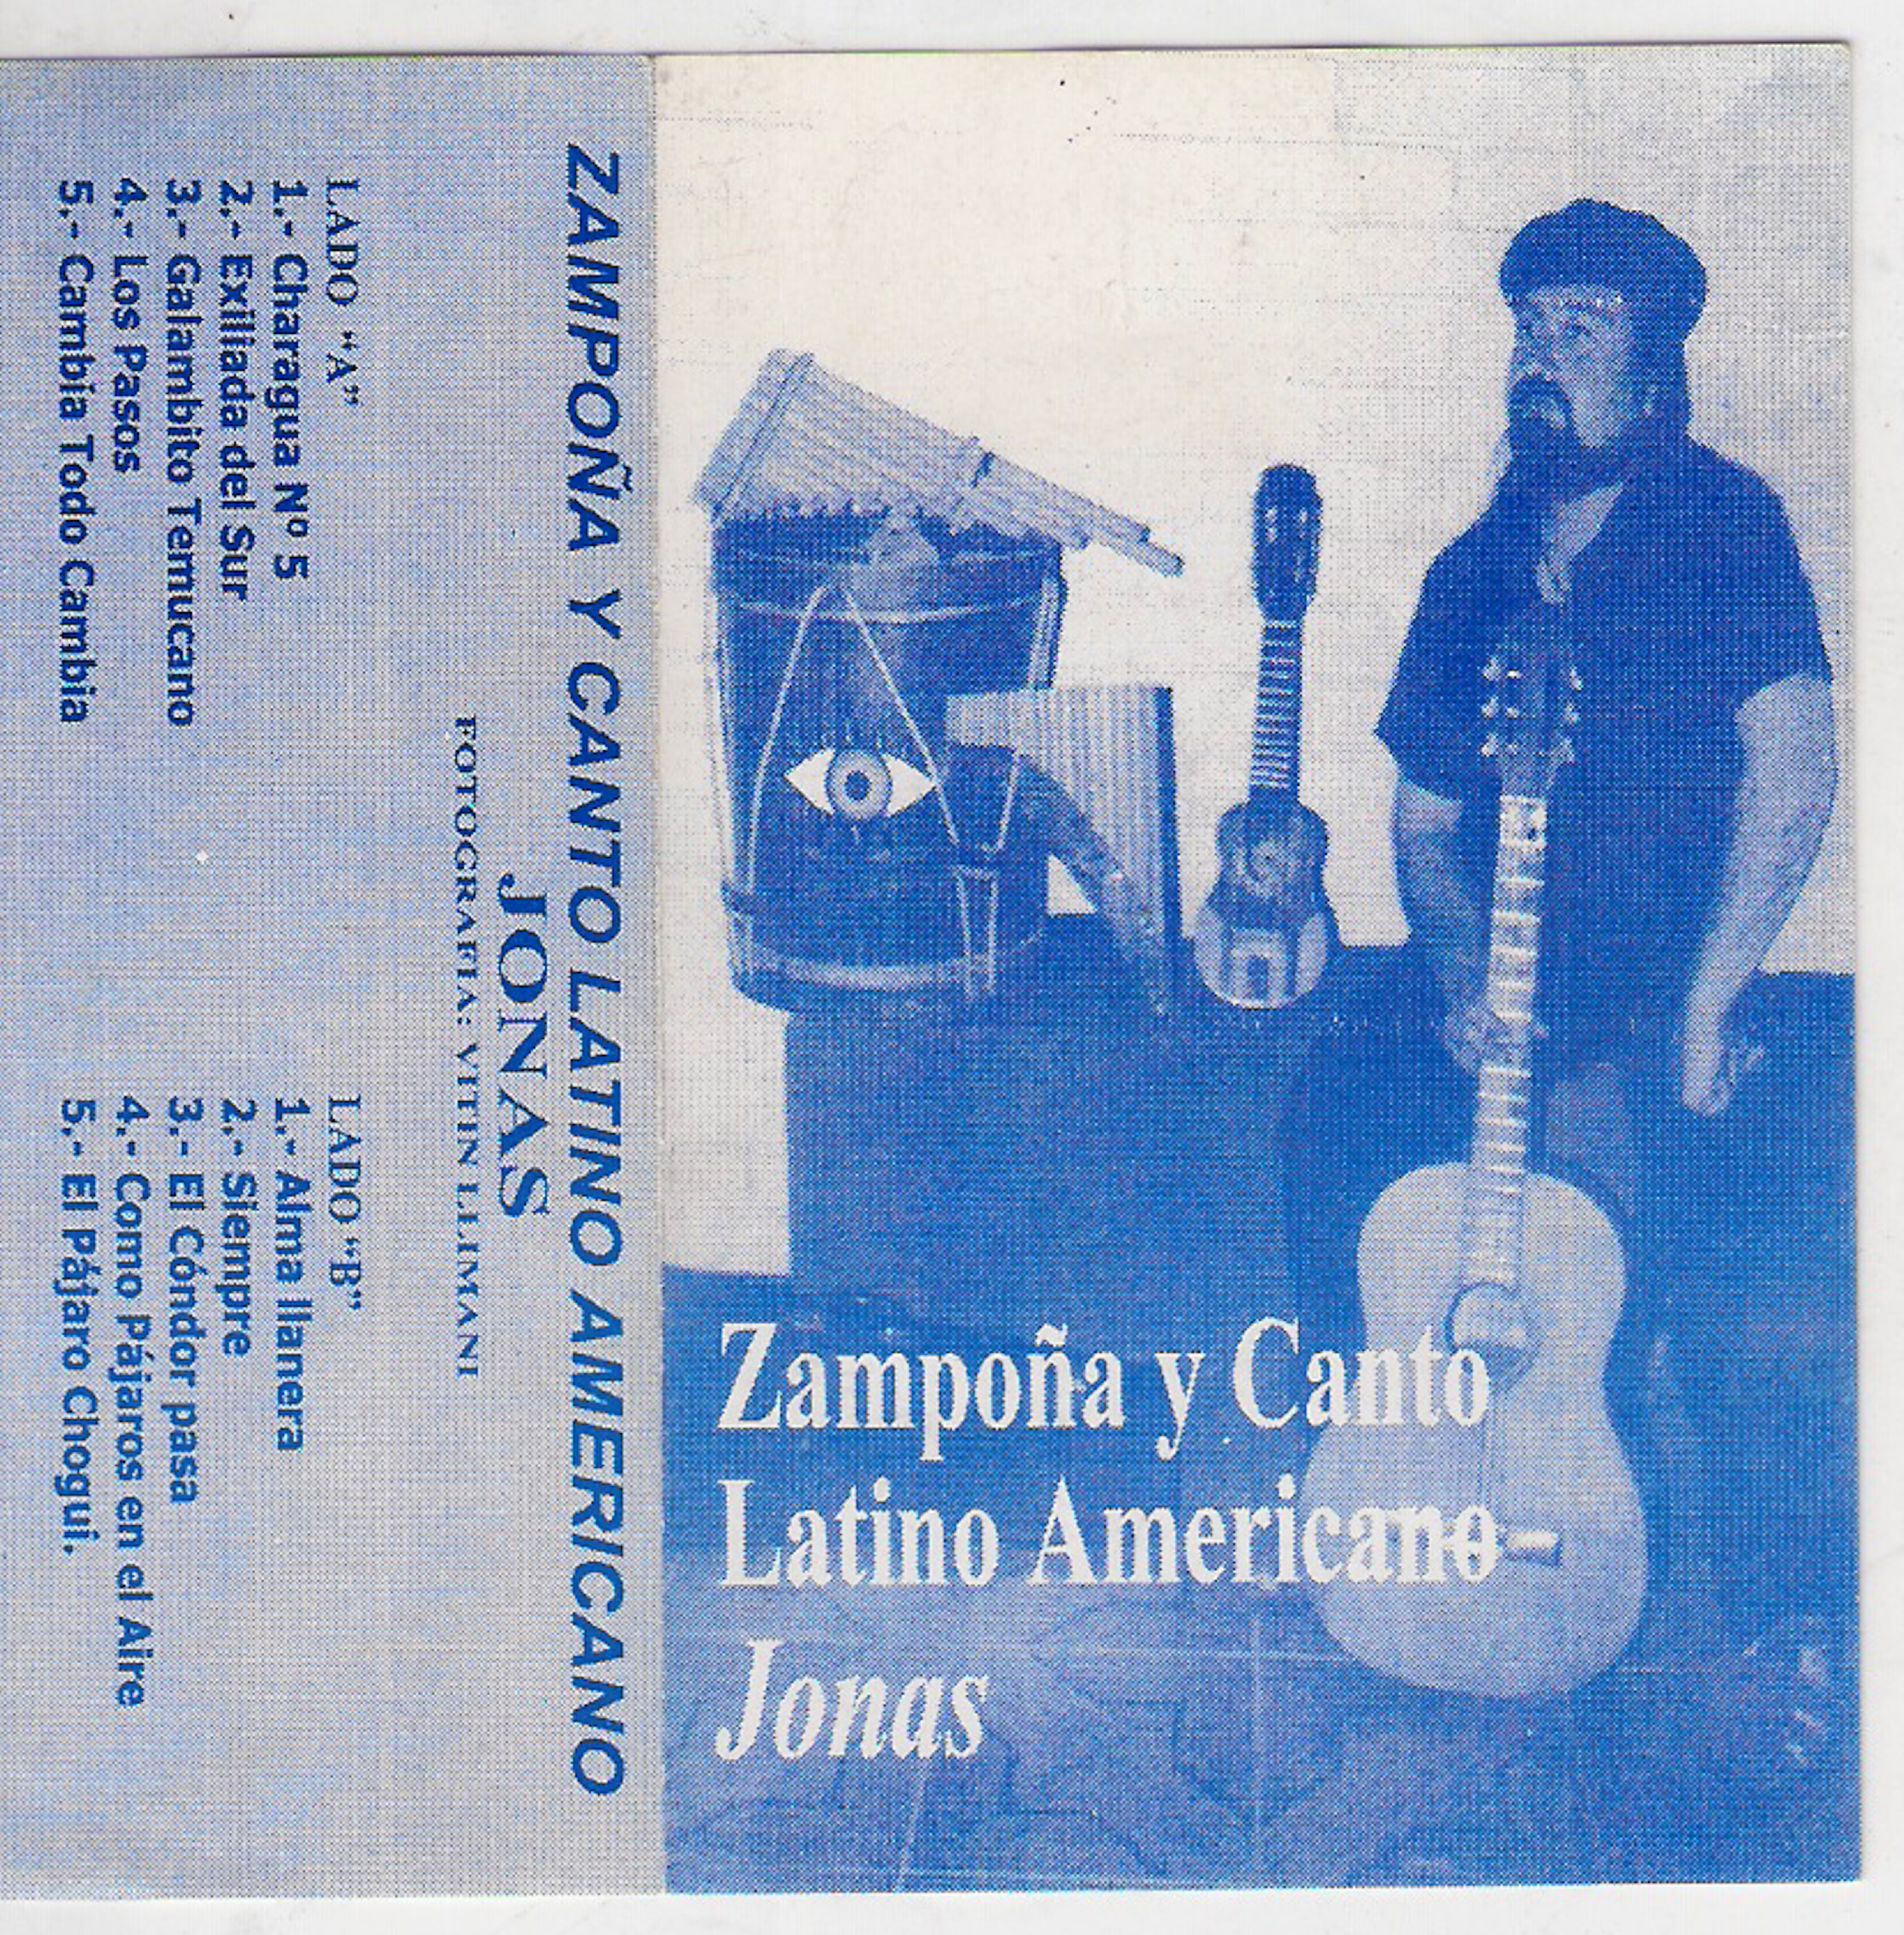 Zampoña y canto latinoamericano